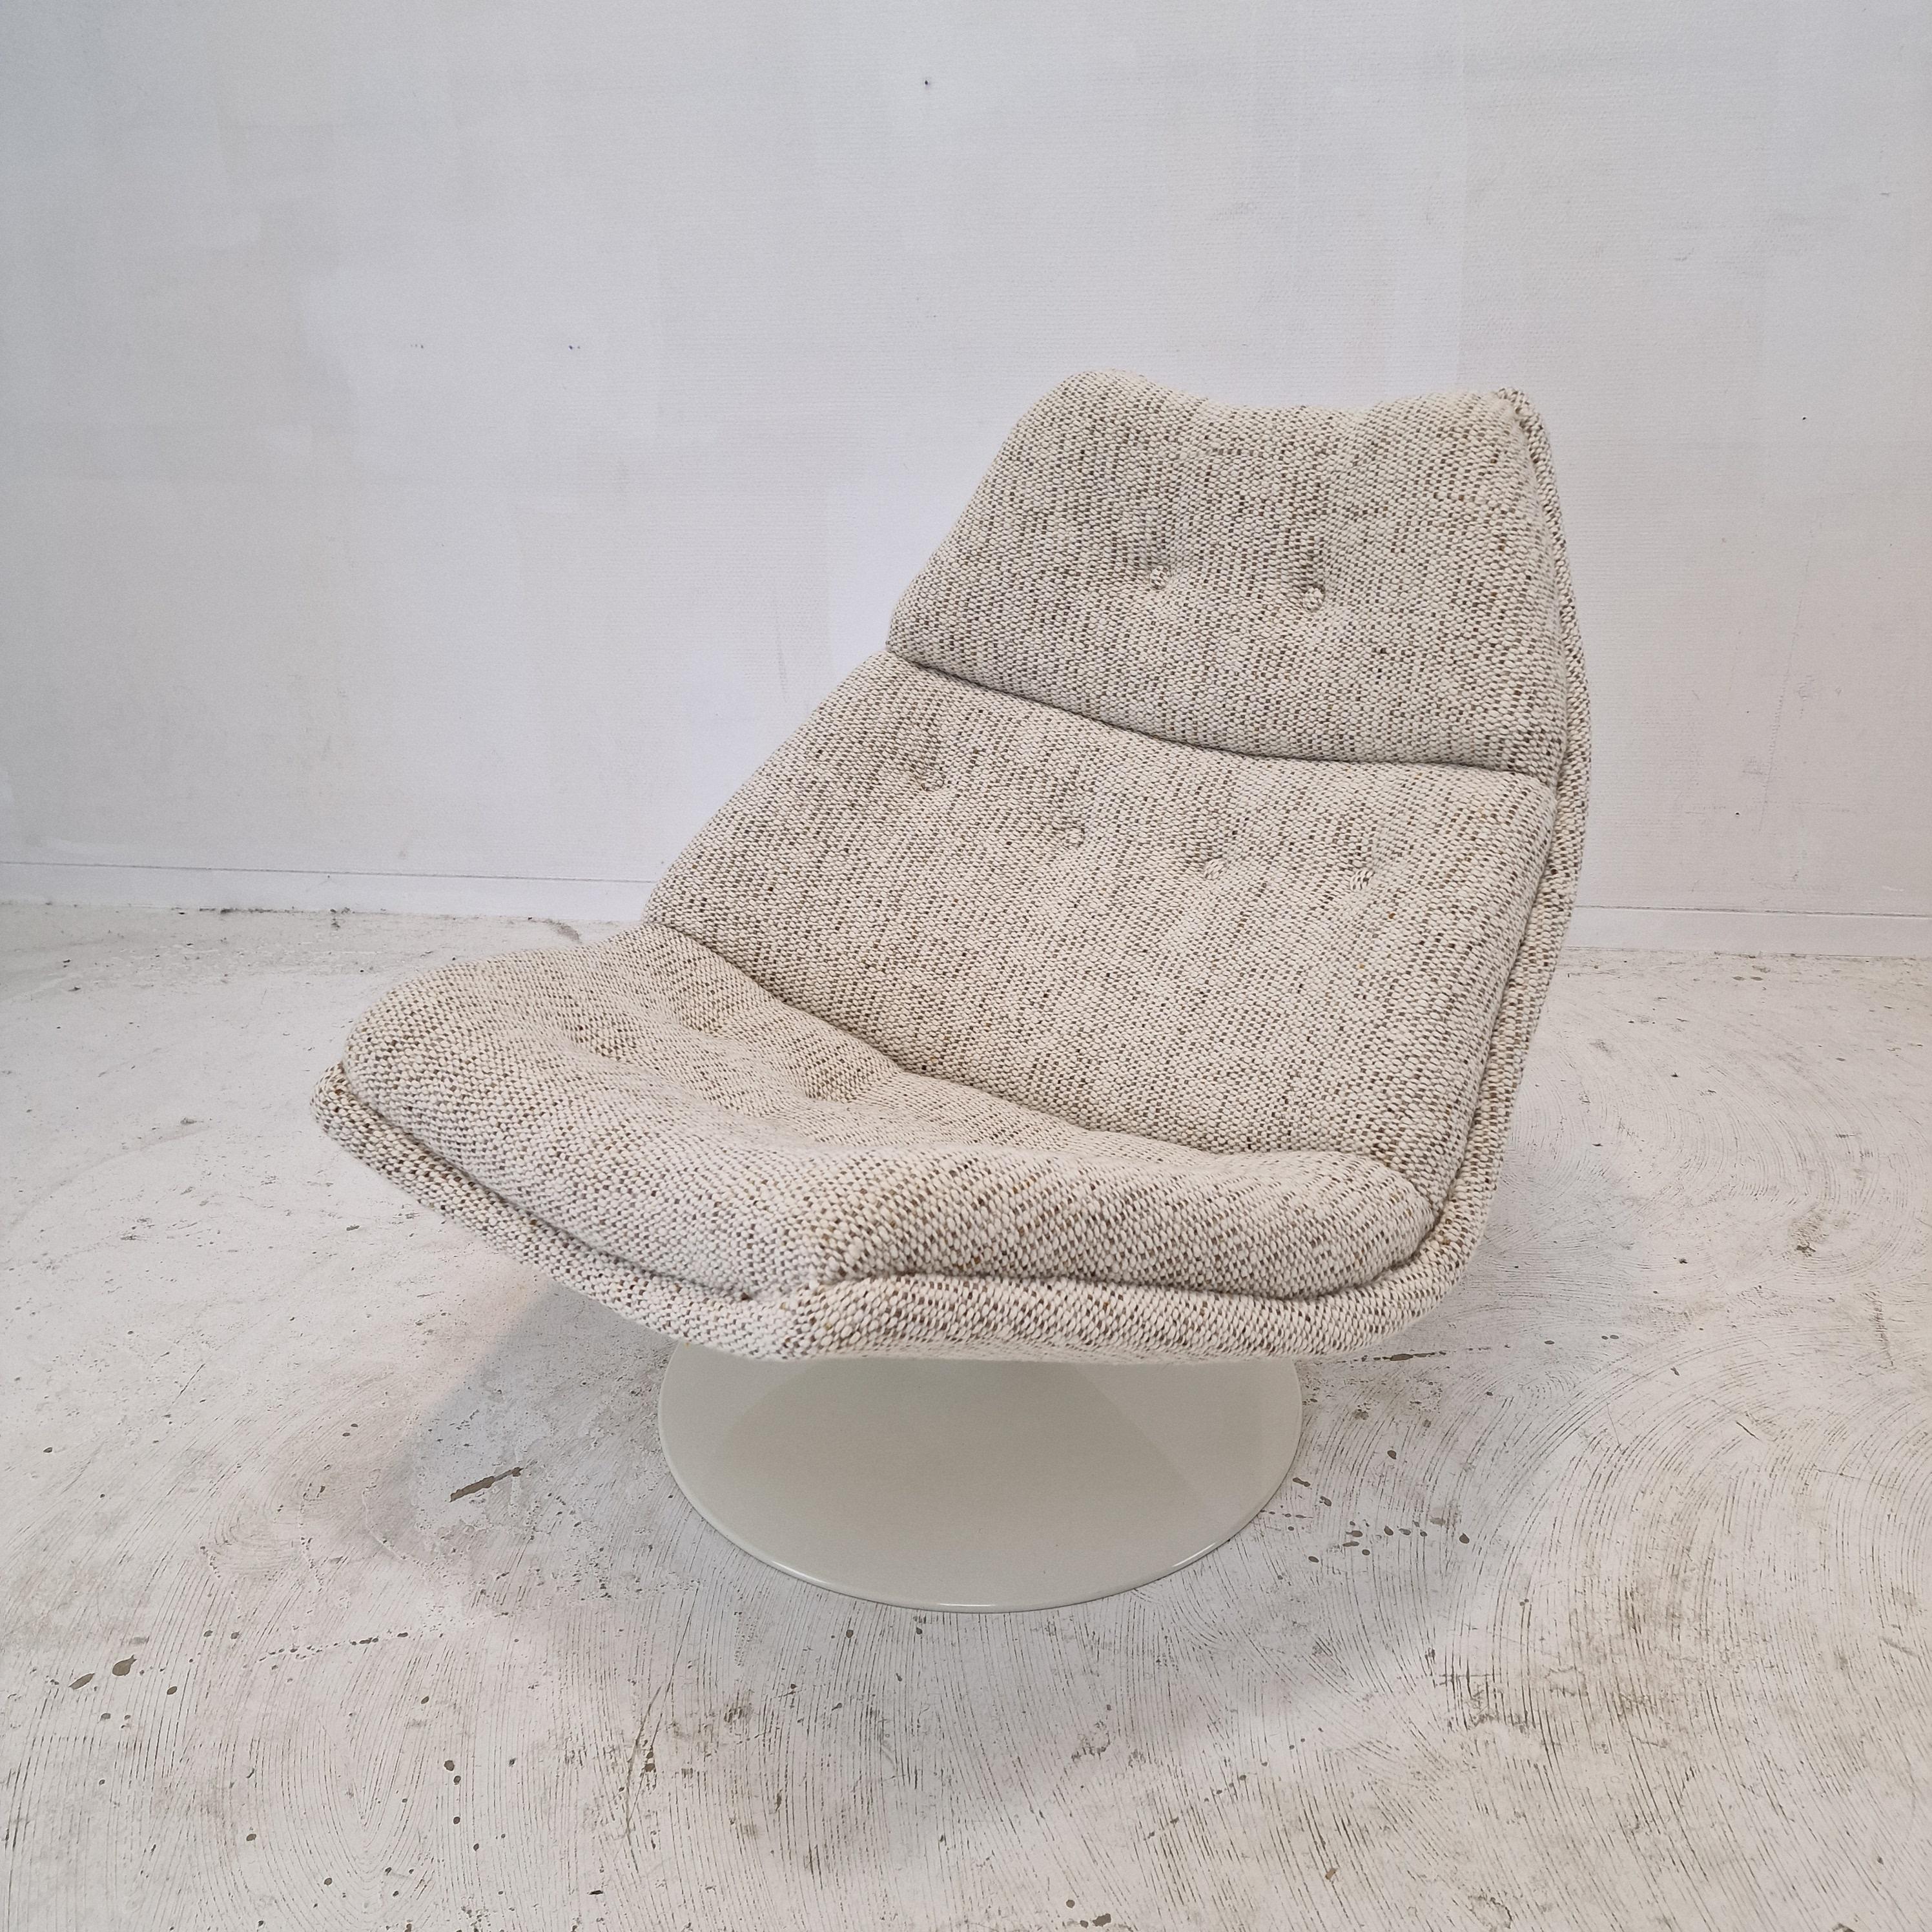 Chaise longue très confortable Artifort modèle F511. 
Conçu par le célèbre designer anglais Geoffrey Harcourt dans les années 60. 

La chaise vient d'être restaurée avec un nouveau tissu et une nouvelle mousse.
Il a été retapissé avec un superbe